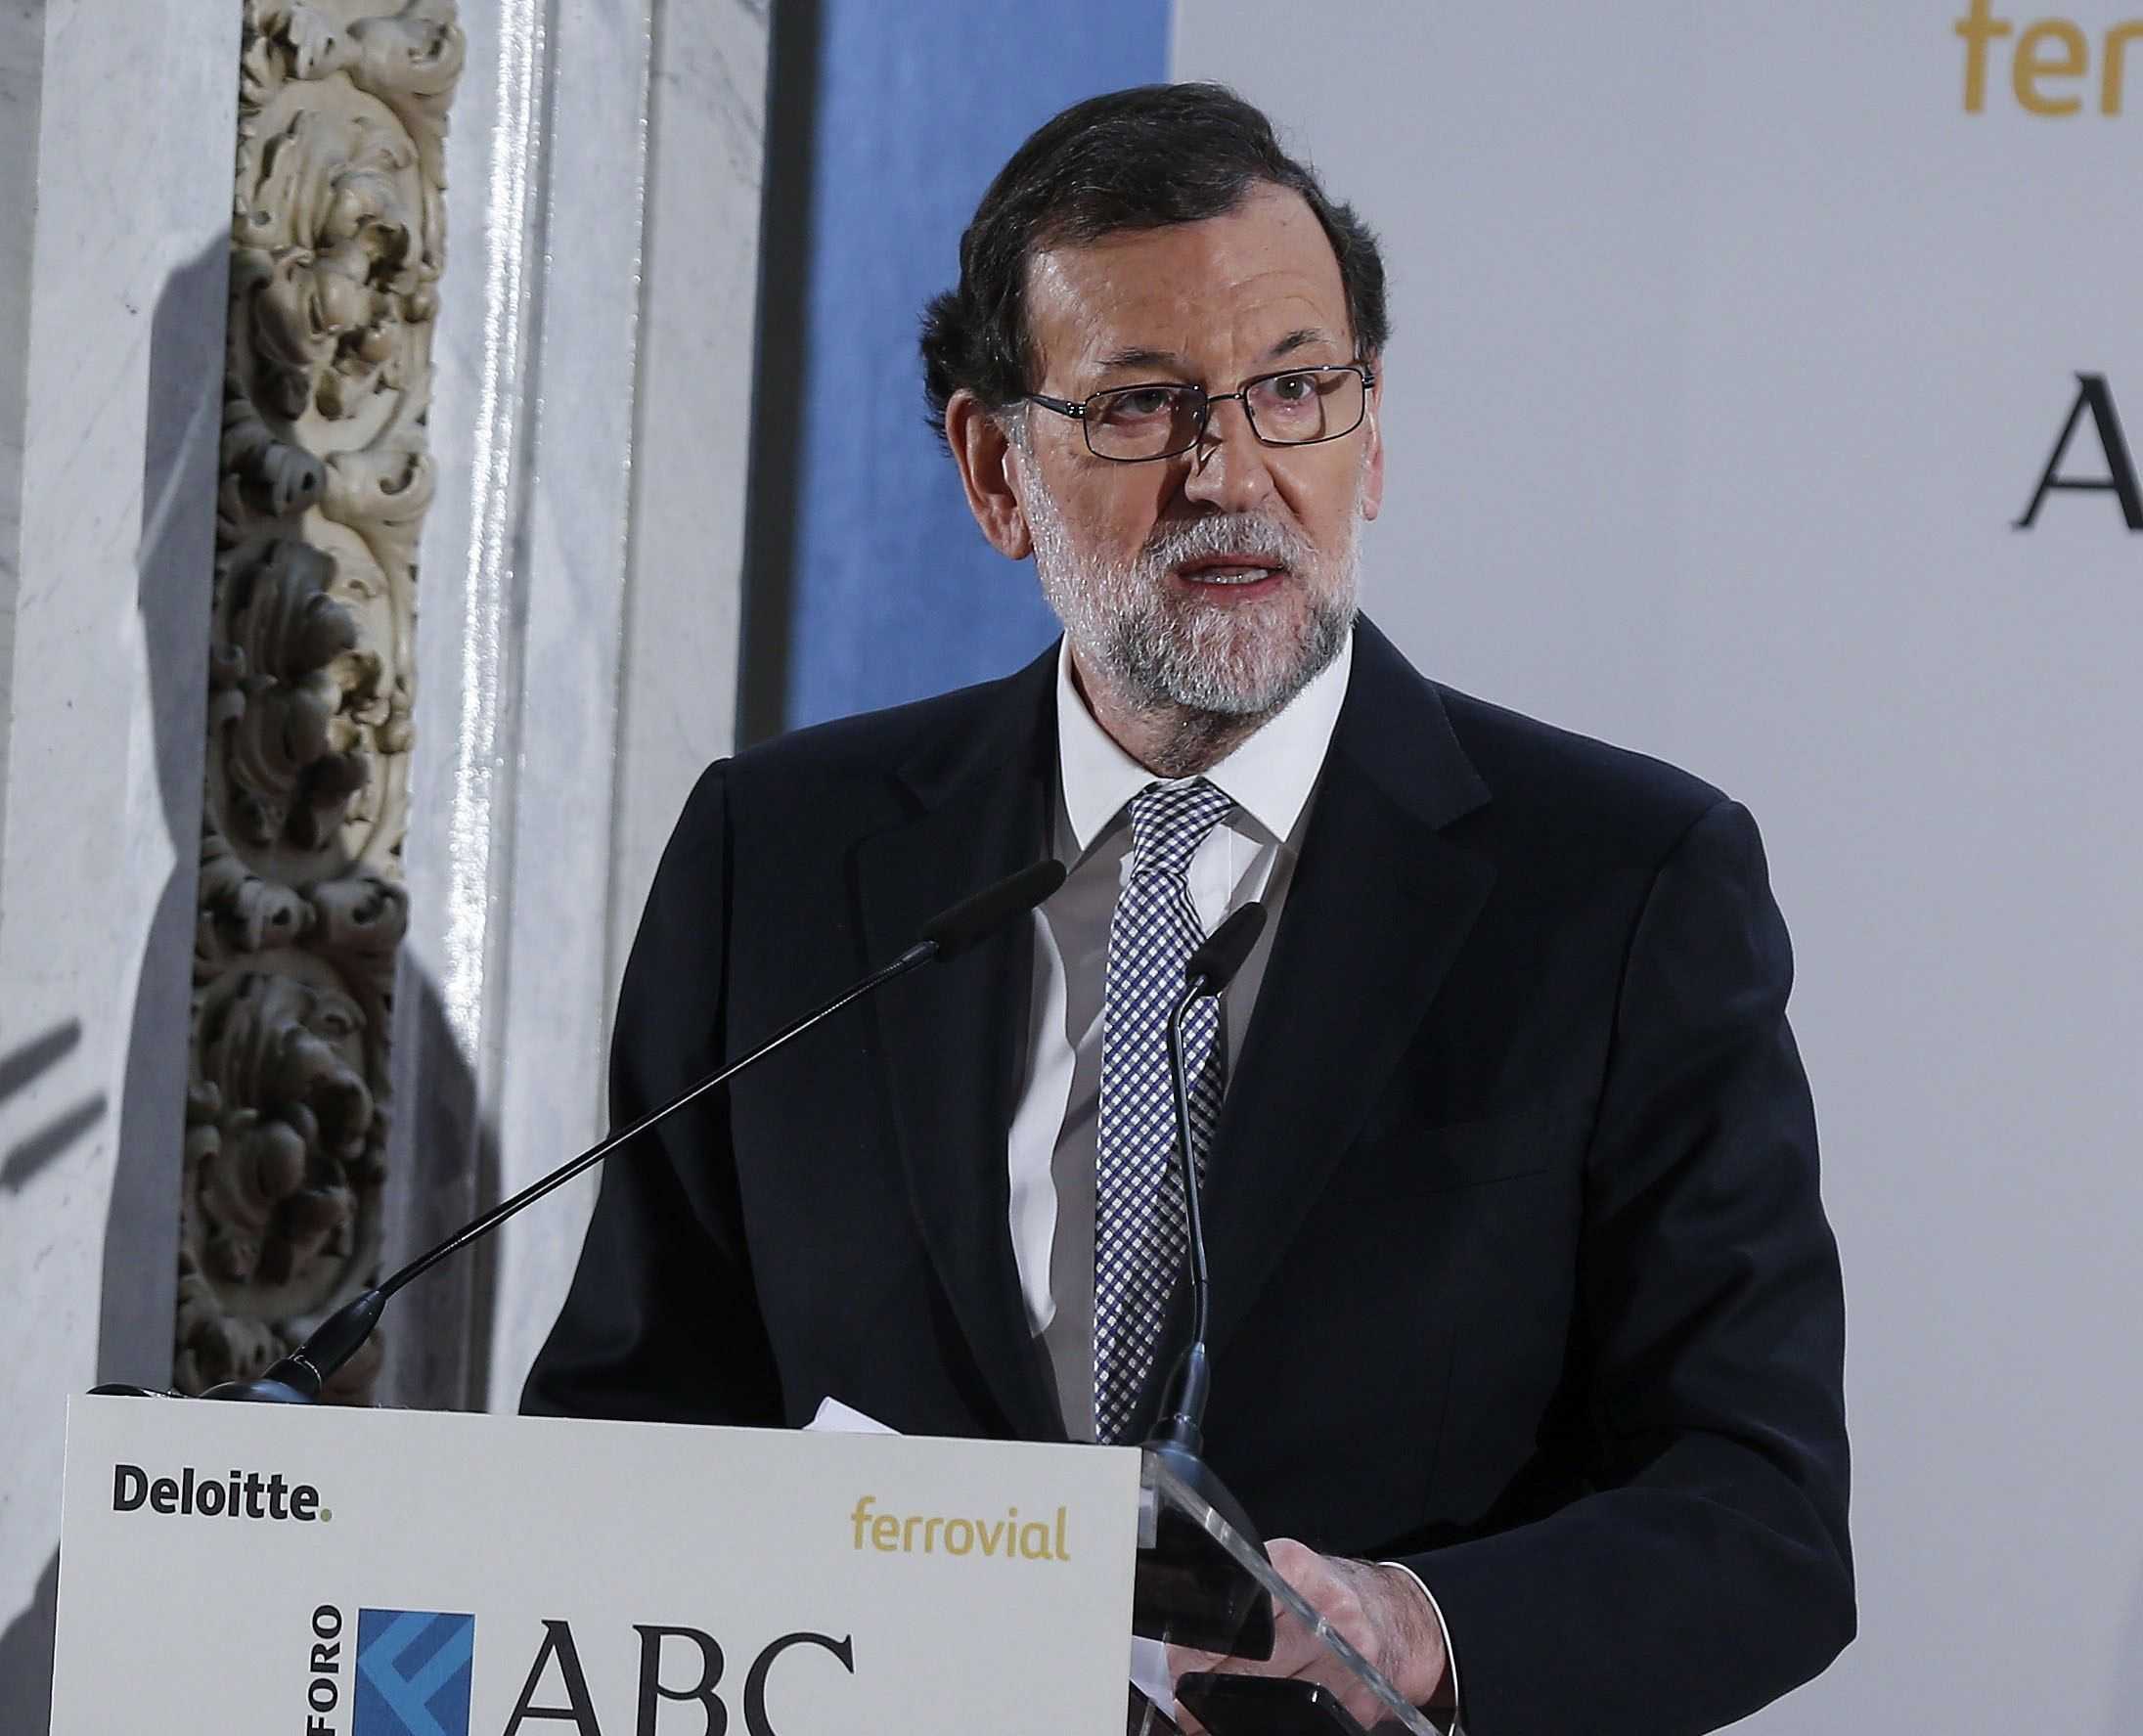 Rajoy creu que Puigdemont "mereixia" el boicot de la UE